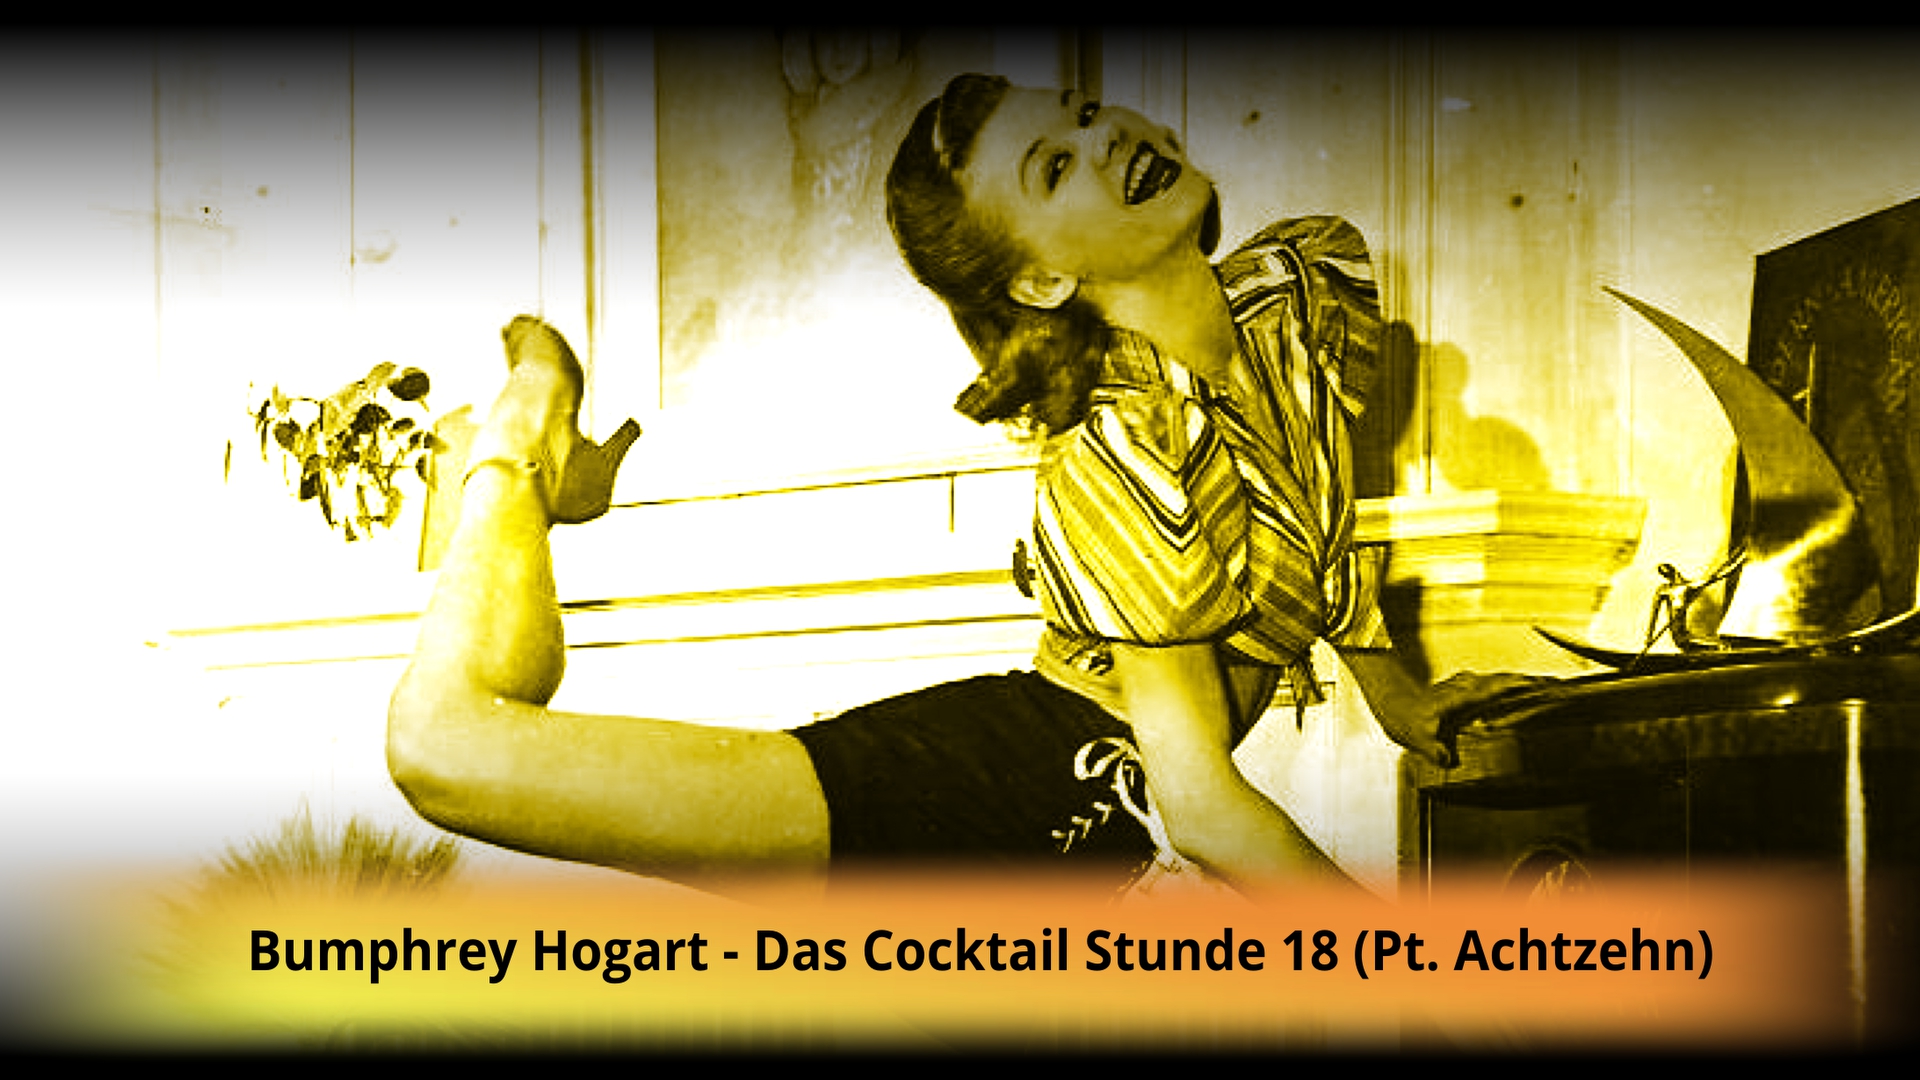 Bumphrey Hogart-Das Cocktail Stunde 18 (Pt. Achtzehn)